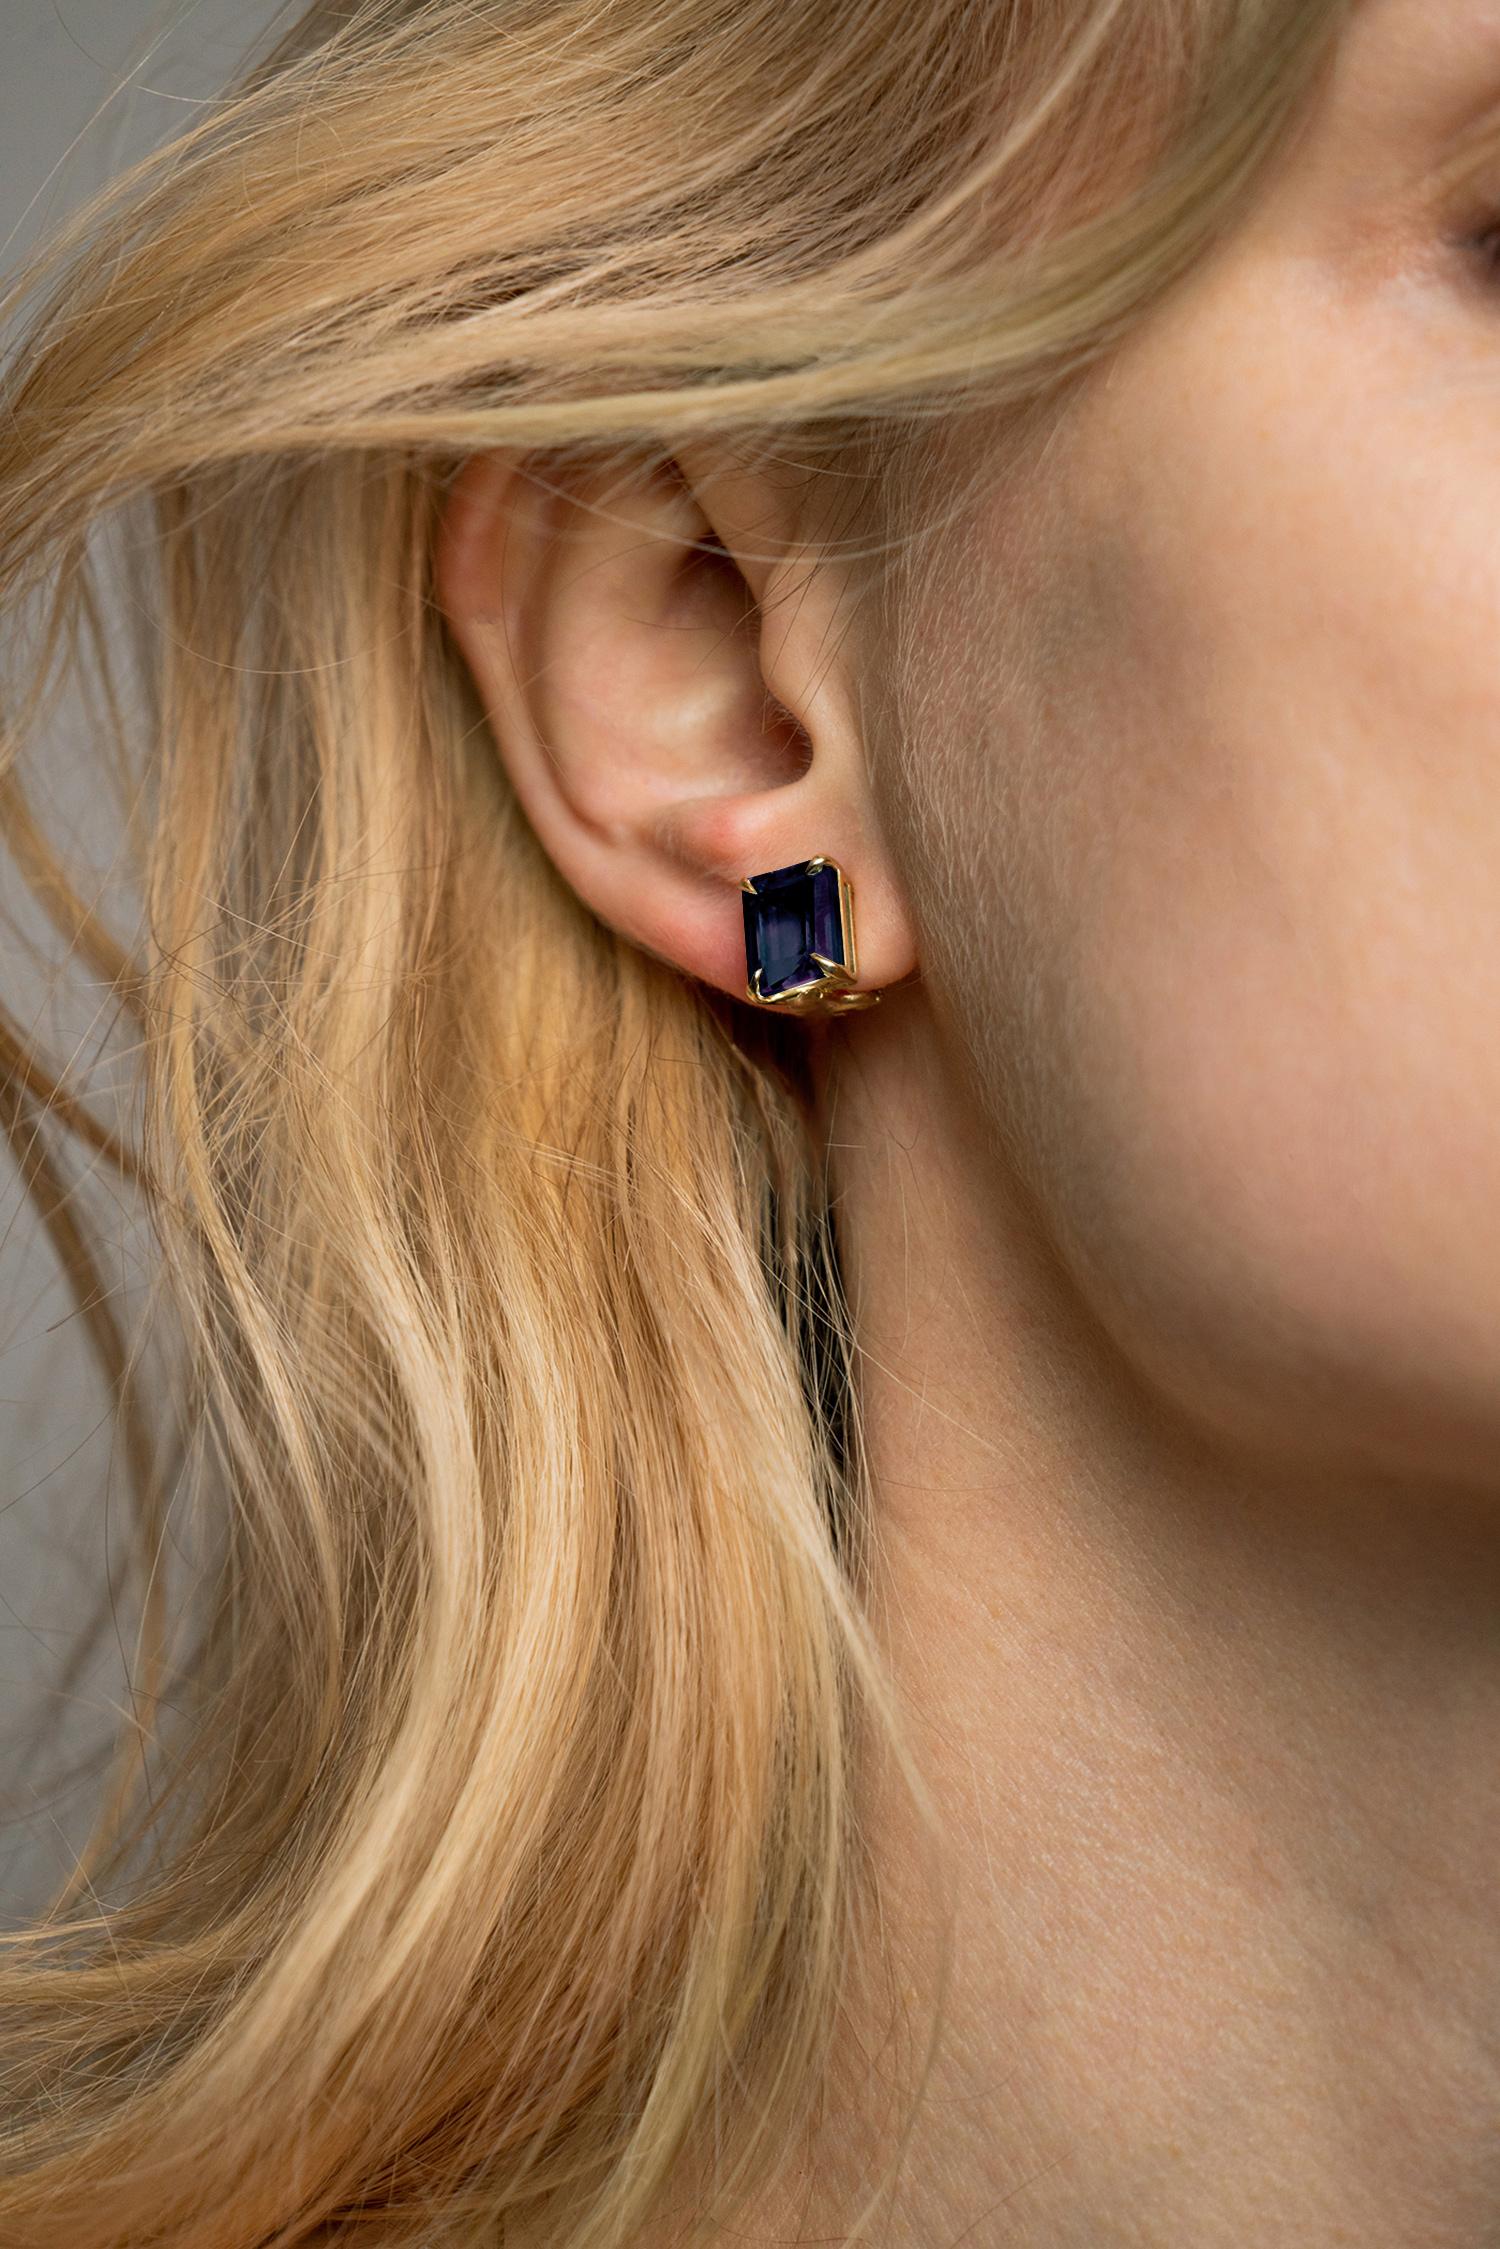 Ces boucles d'oreilles contemporaines, nommées d'après la Mésopotamie, sont ornées de saphirs naturels bleu foncé (9 x 6 mm chacun, taille octogonale). Elles appartiennent à la collection qui a été présentée dans un numéro publié de Vogue UA. Les